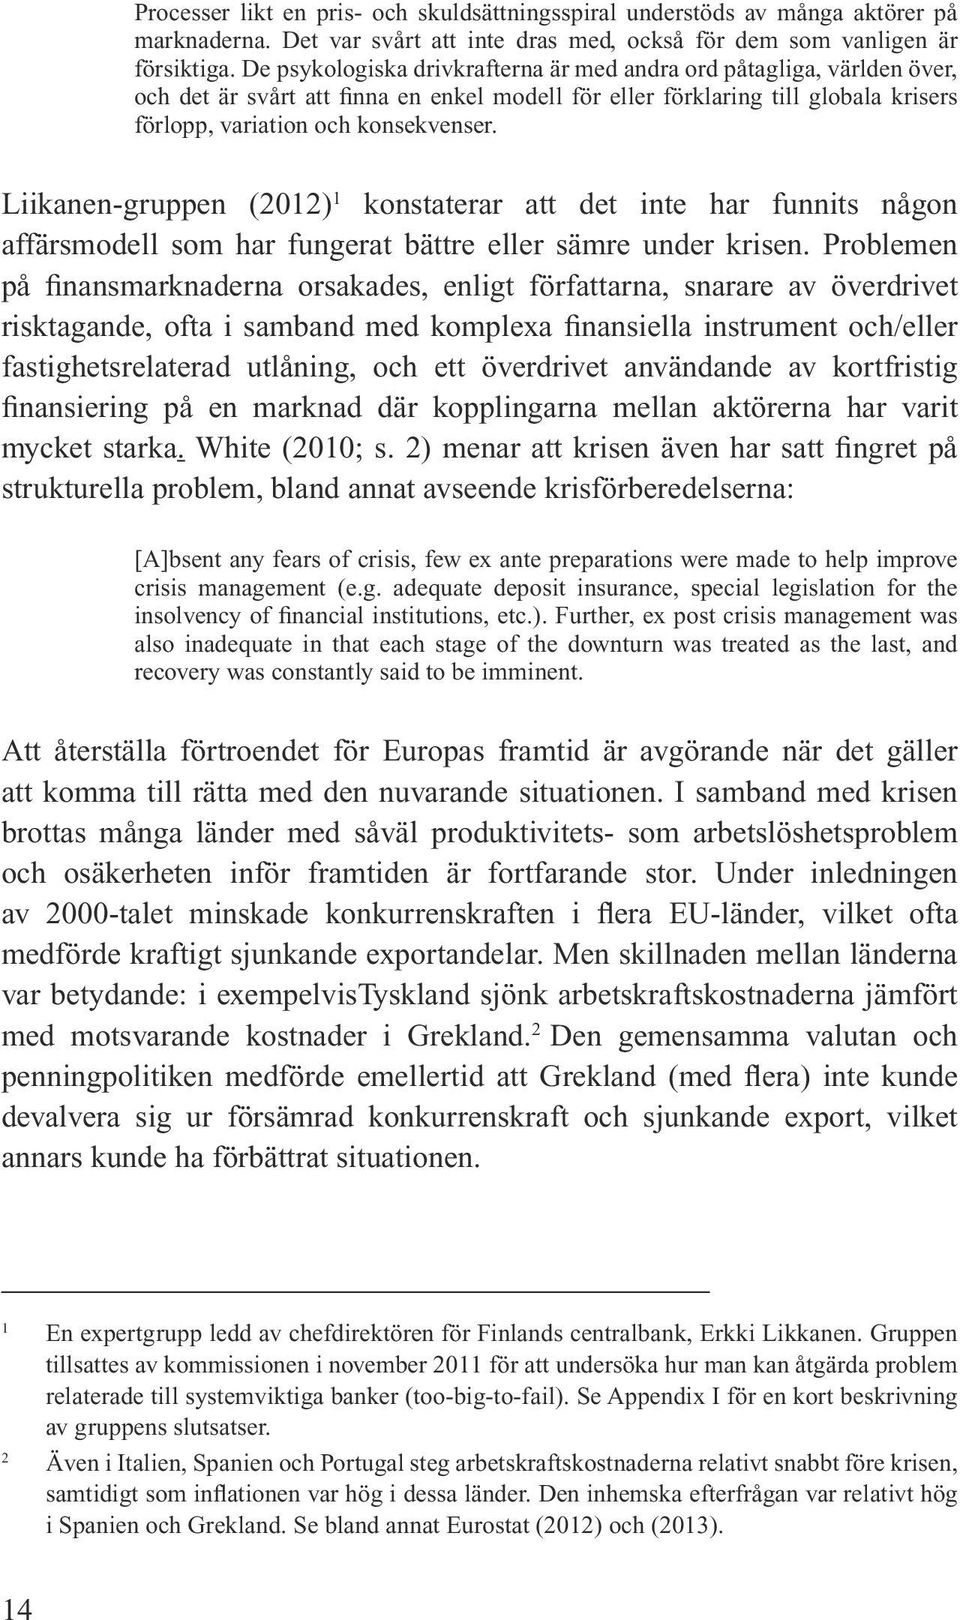 Liikanen-gruppen (2012) 1 konstaterar att det inte har funnits någon affärsmodell som har fungerat bättre eller sämre under krisen.